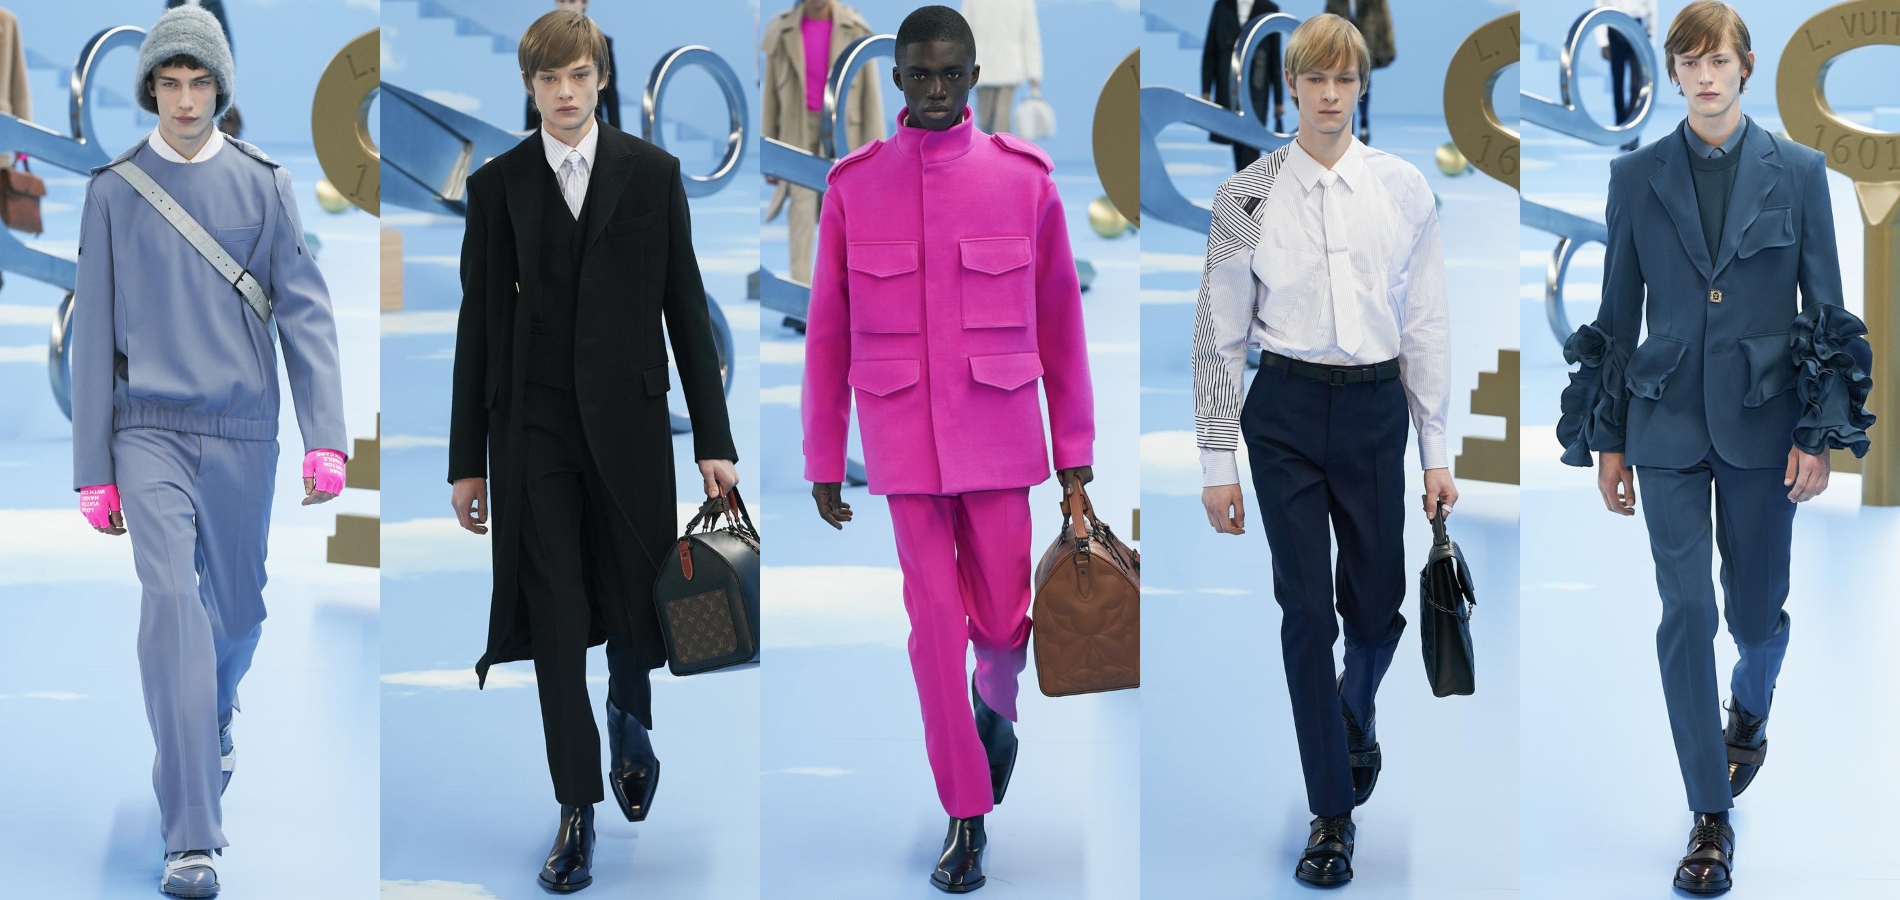 Défilé Louis Vuitton automne-hiver 2020-2021 Homme  Sac de voyage louis  vuitton, Chaussure homme mode, Maroquinerie homme